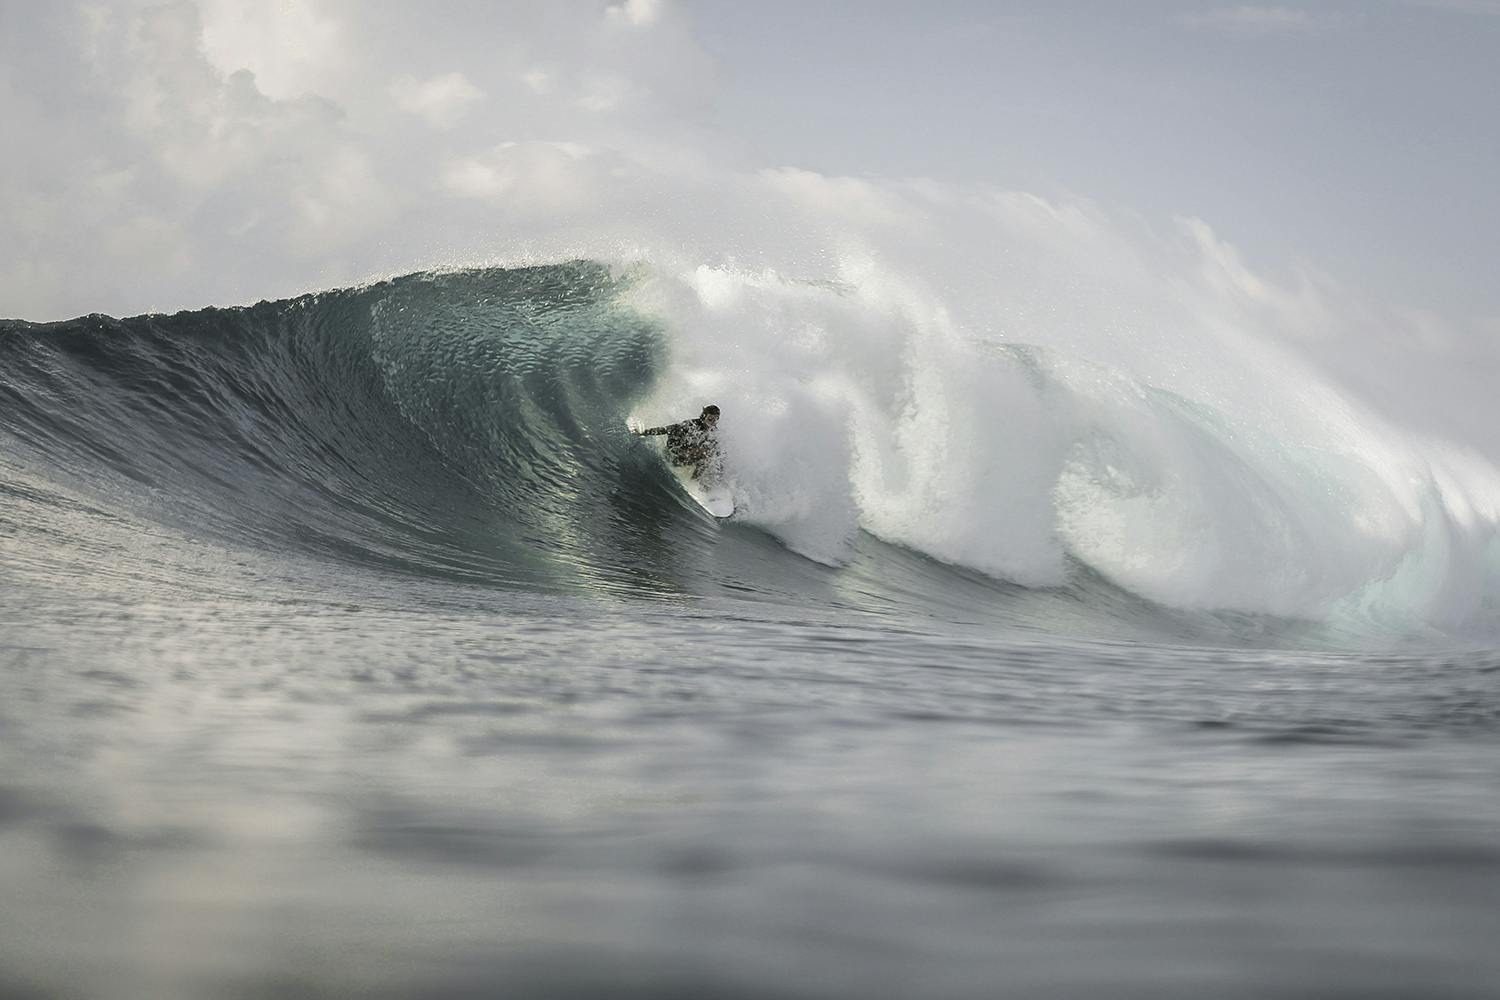 Surfing Maldives